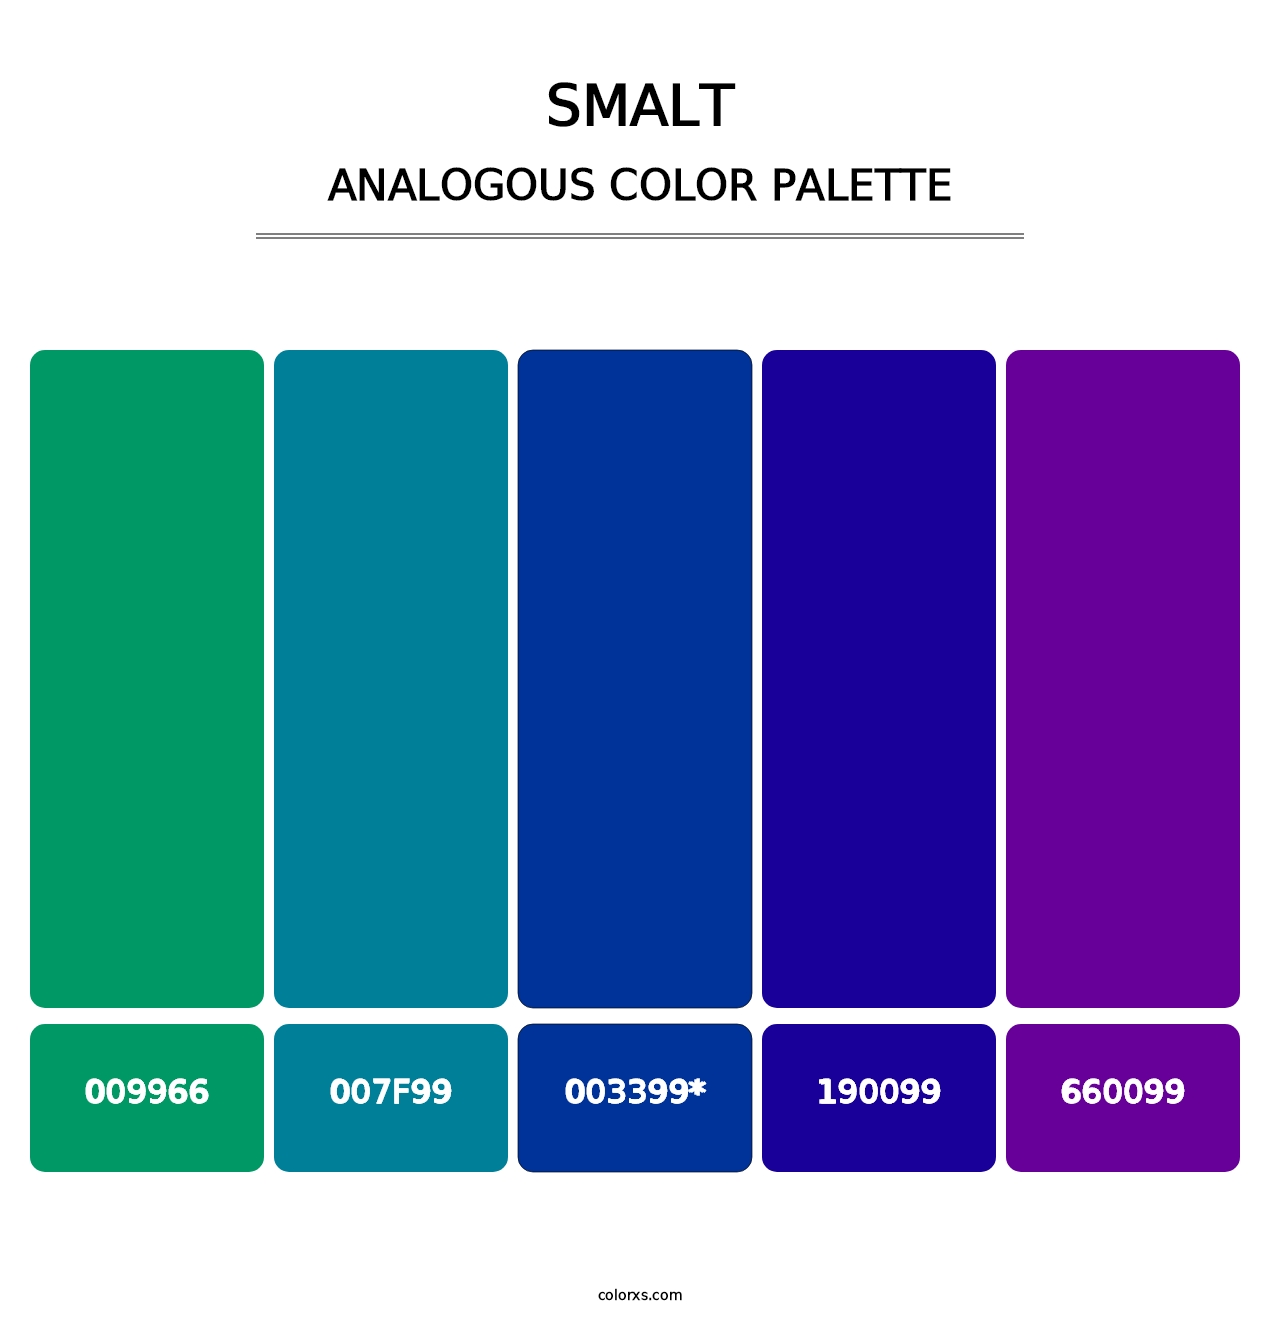 Smalt - Analogous Color Palette